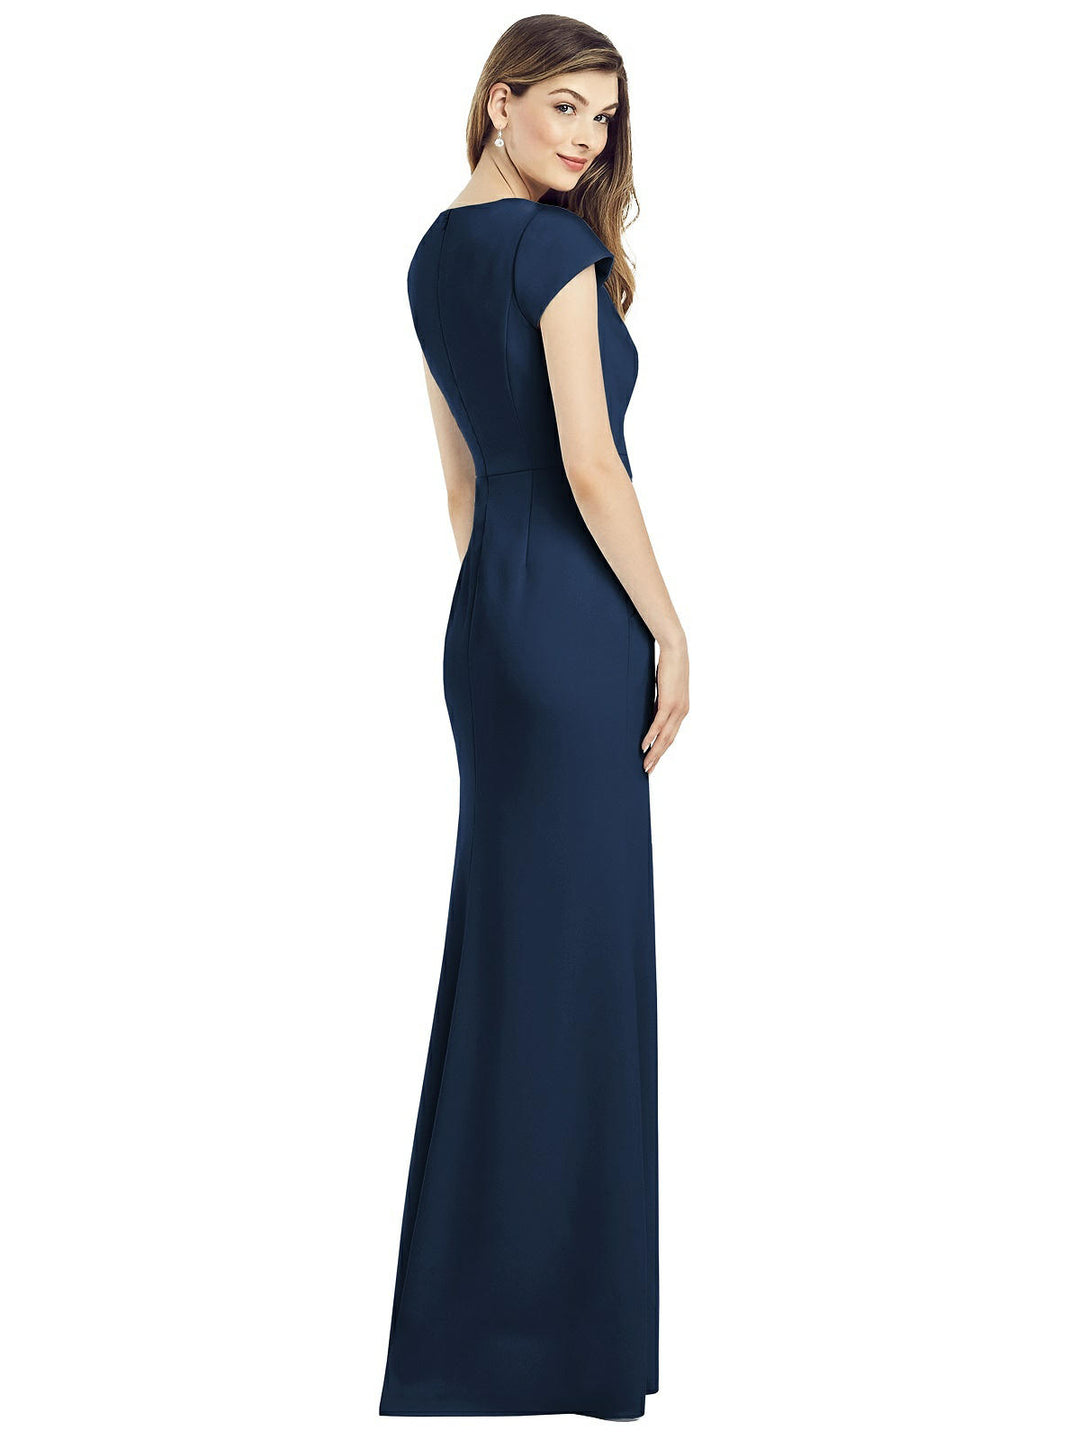 Dessy Dress Style 6825 Size 14